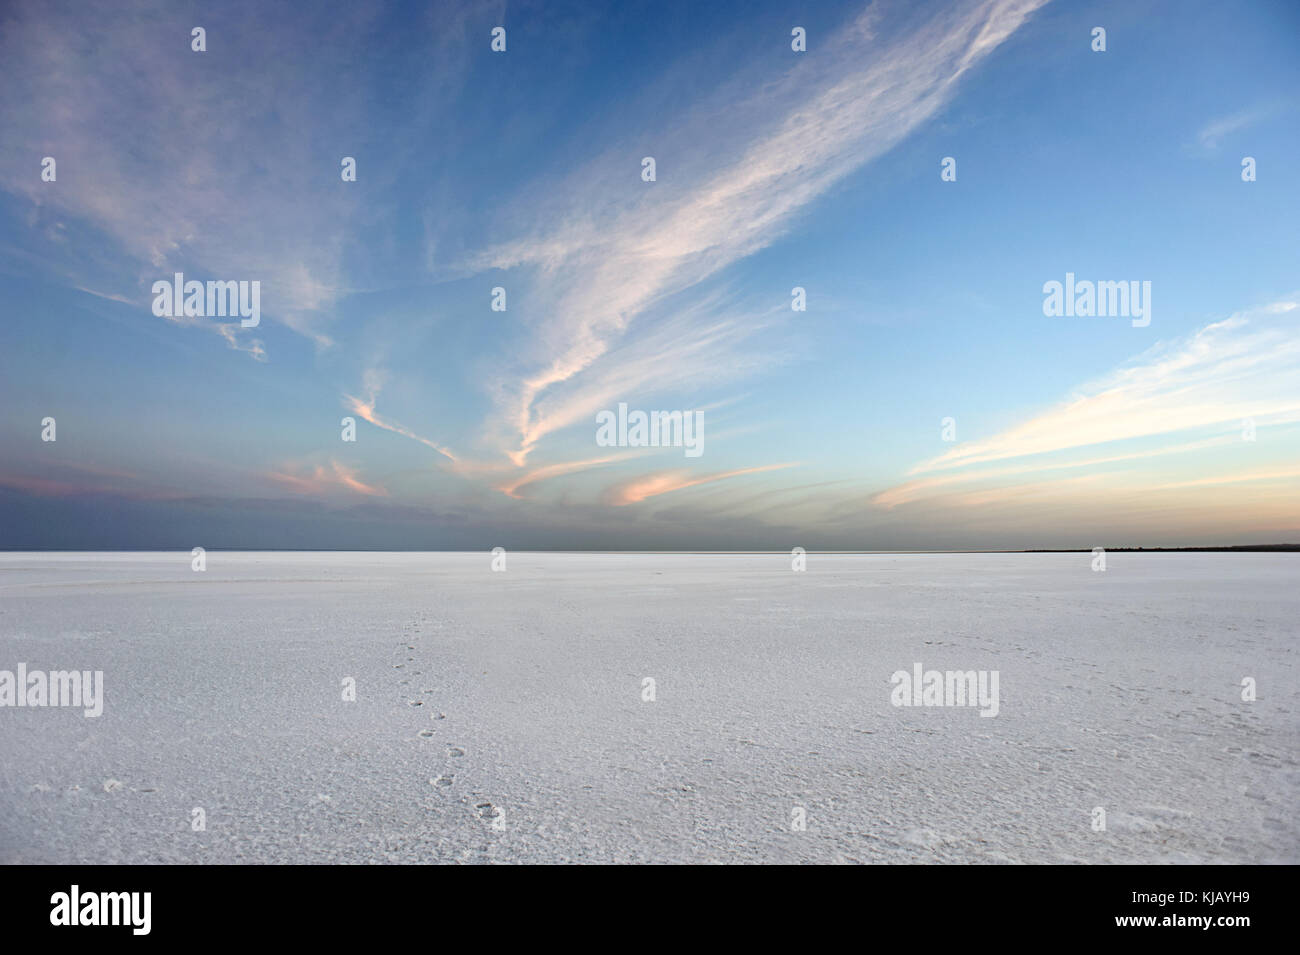 Des images grand angle du désert blanc - blanc Rann de Kutch, au Gujarat, en Inde, en matinée avec différentes formes de nuages dans le ciel bleu ouvert Banque D'Images